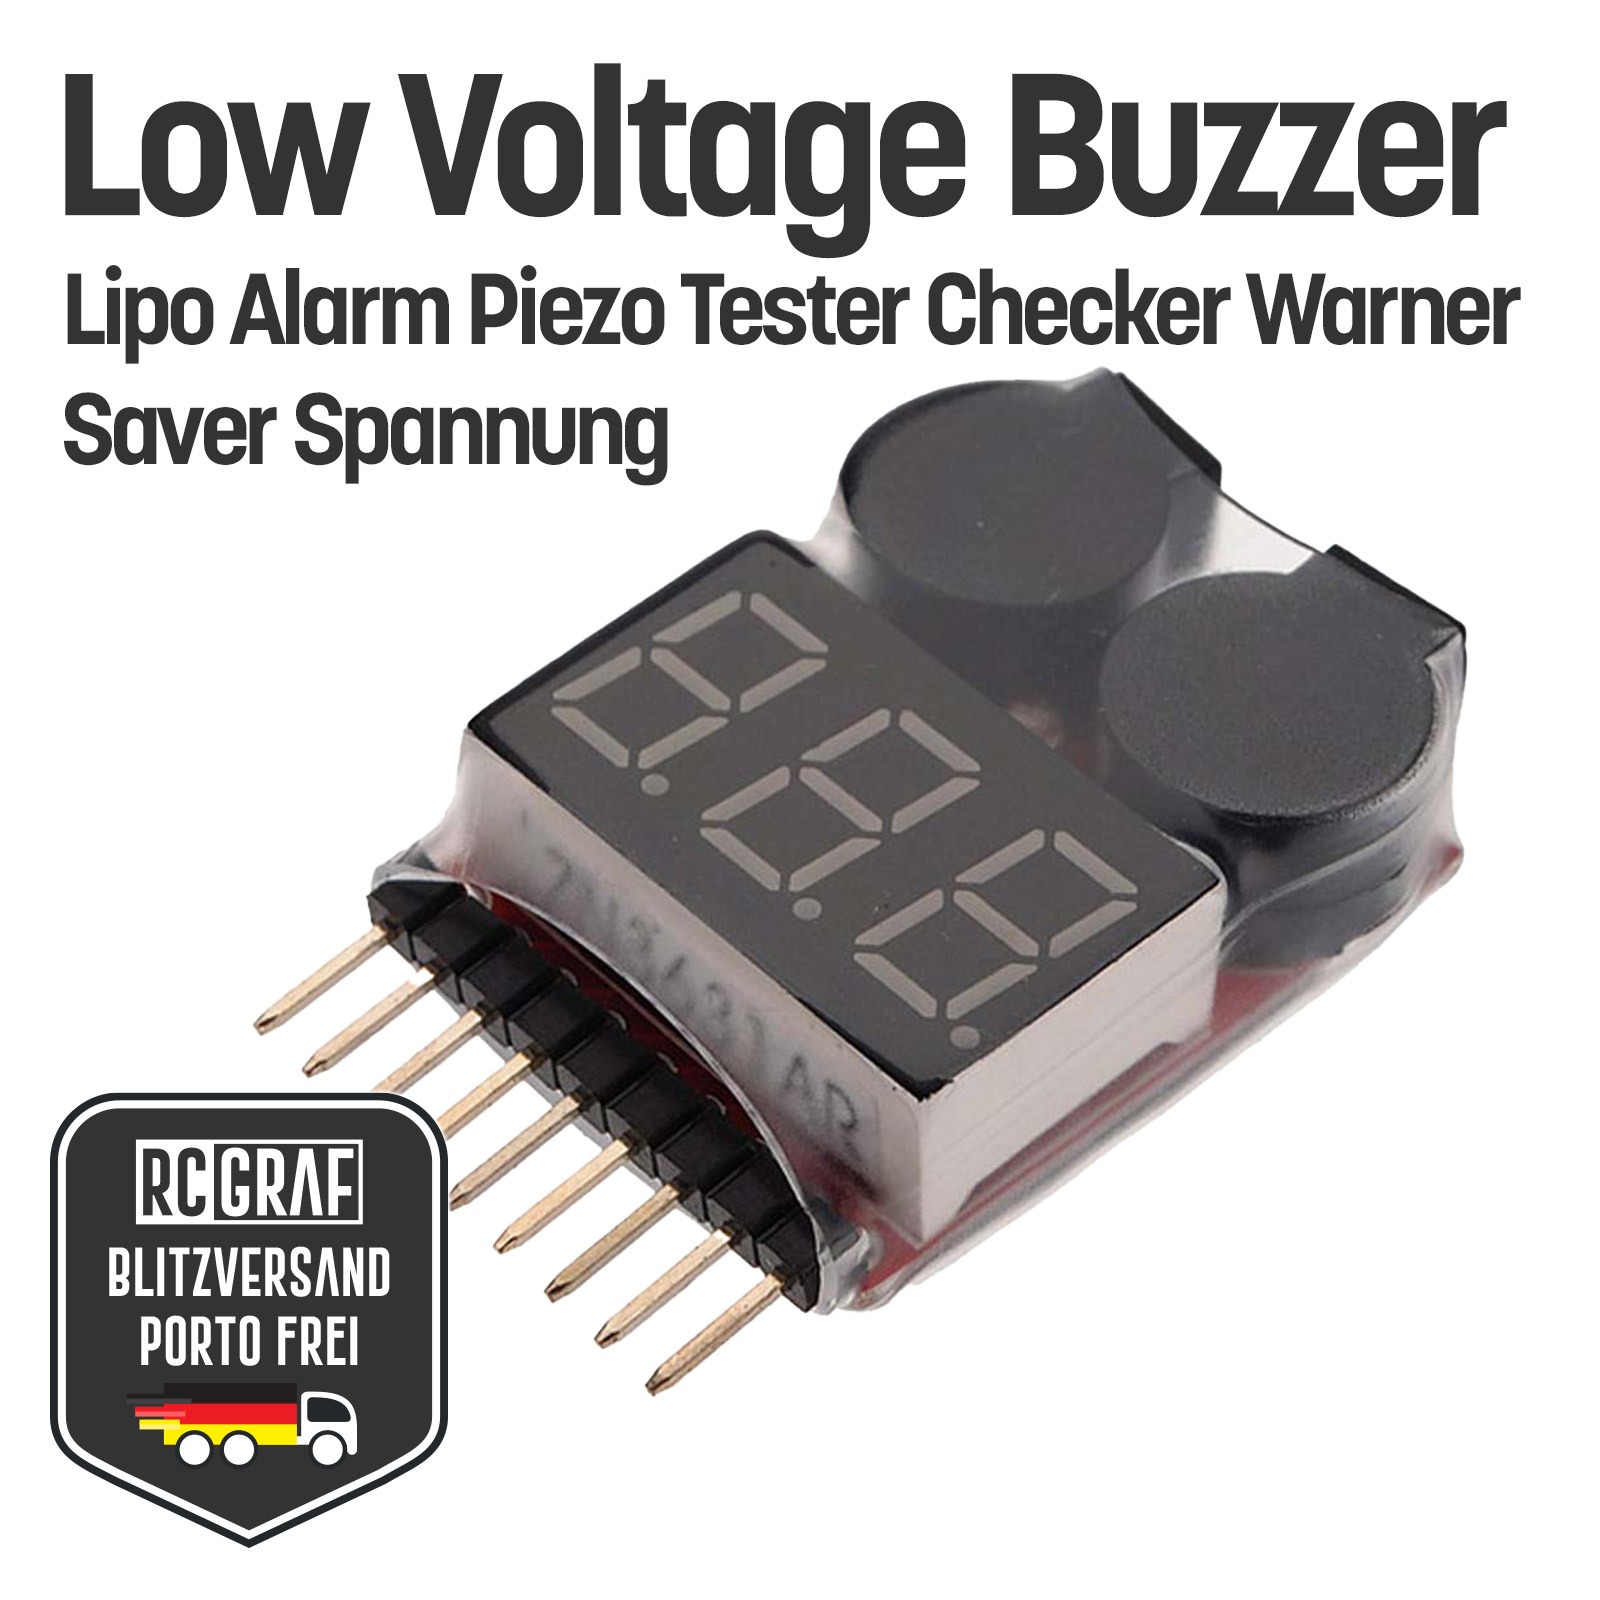 Low Voltage Buzzer Lipo Alarm Piezo Tester